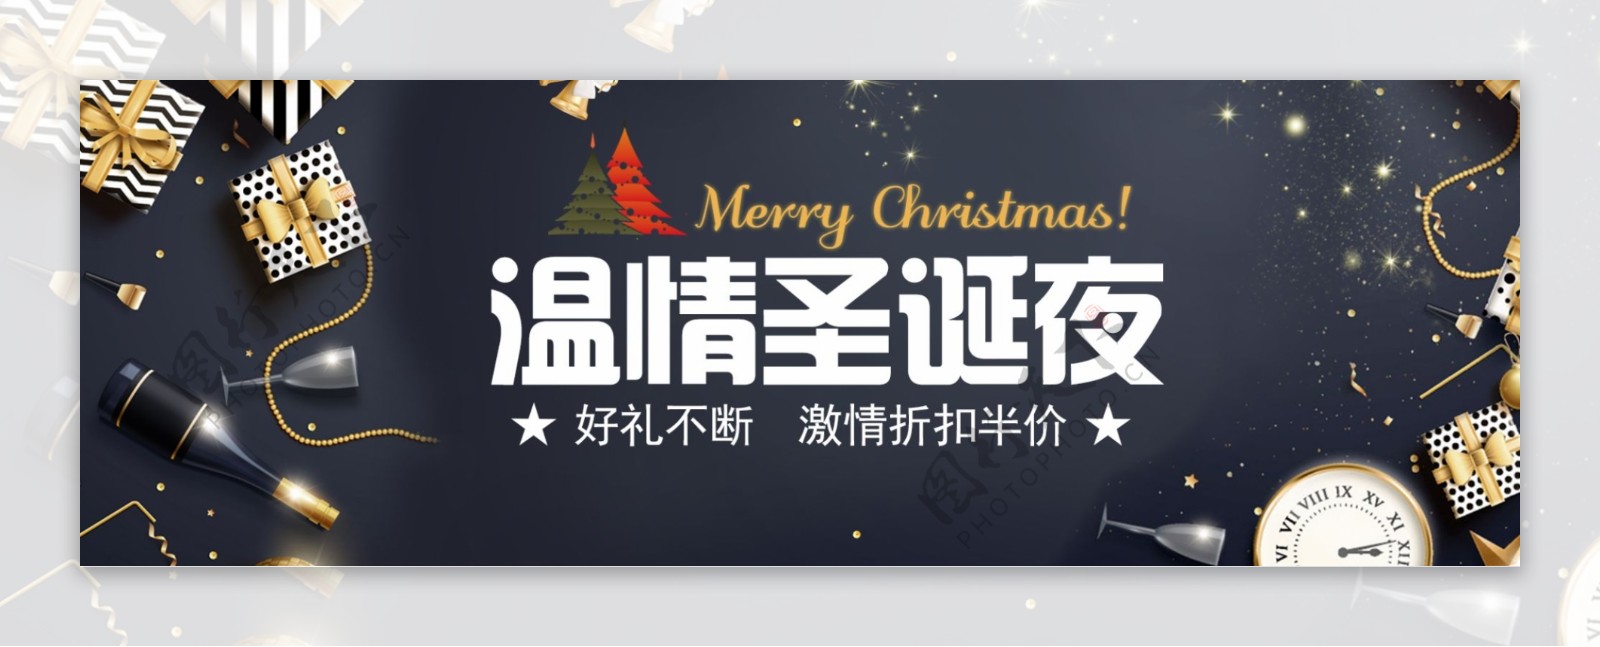 淘宝电商圣诞节黑色背景banner图